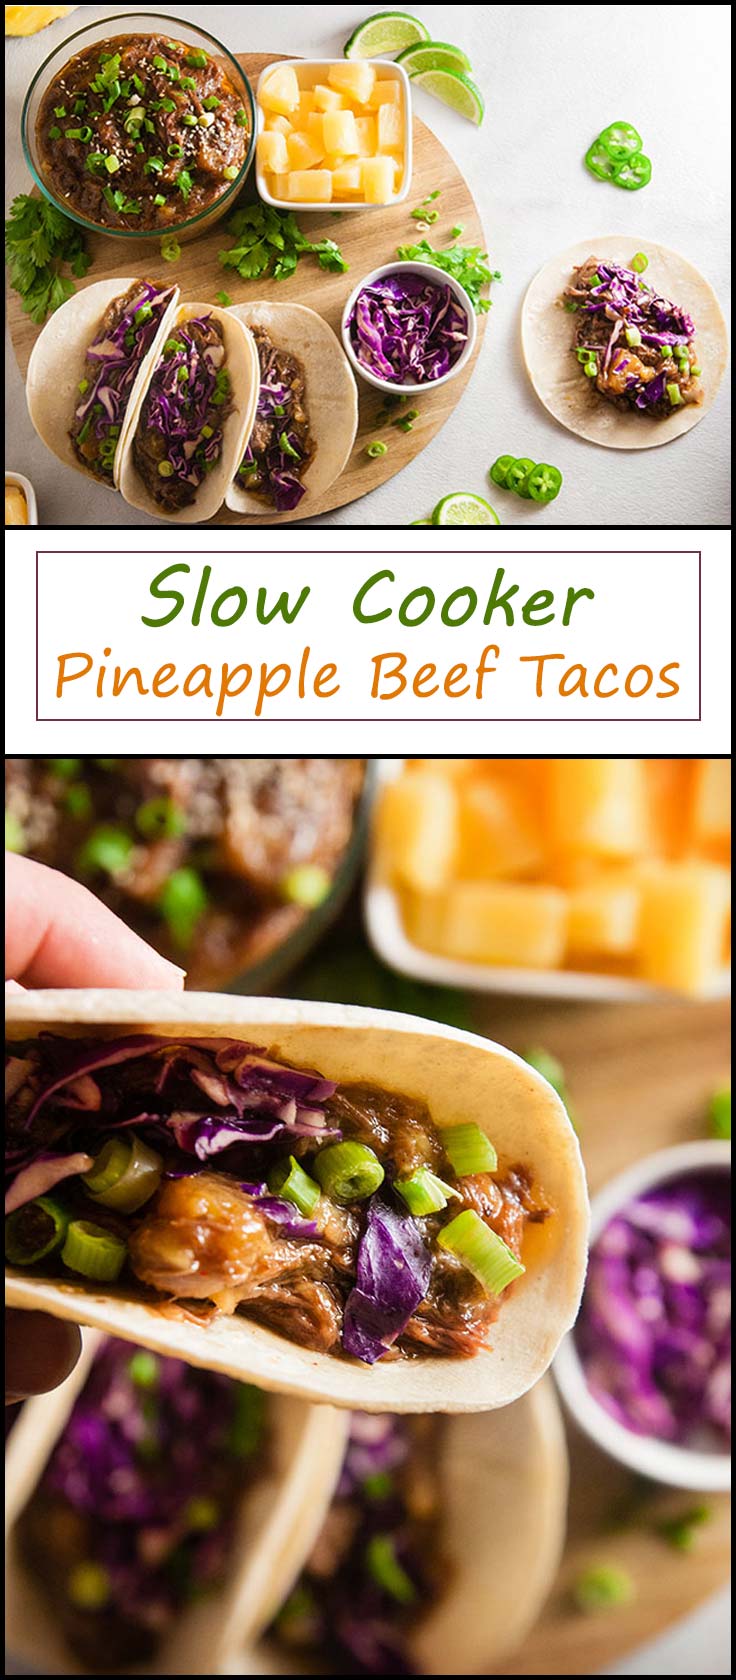 Slow Cooker Pineapple Beef Tacos from www.seasonedsprinkles.com